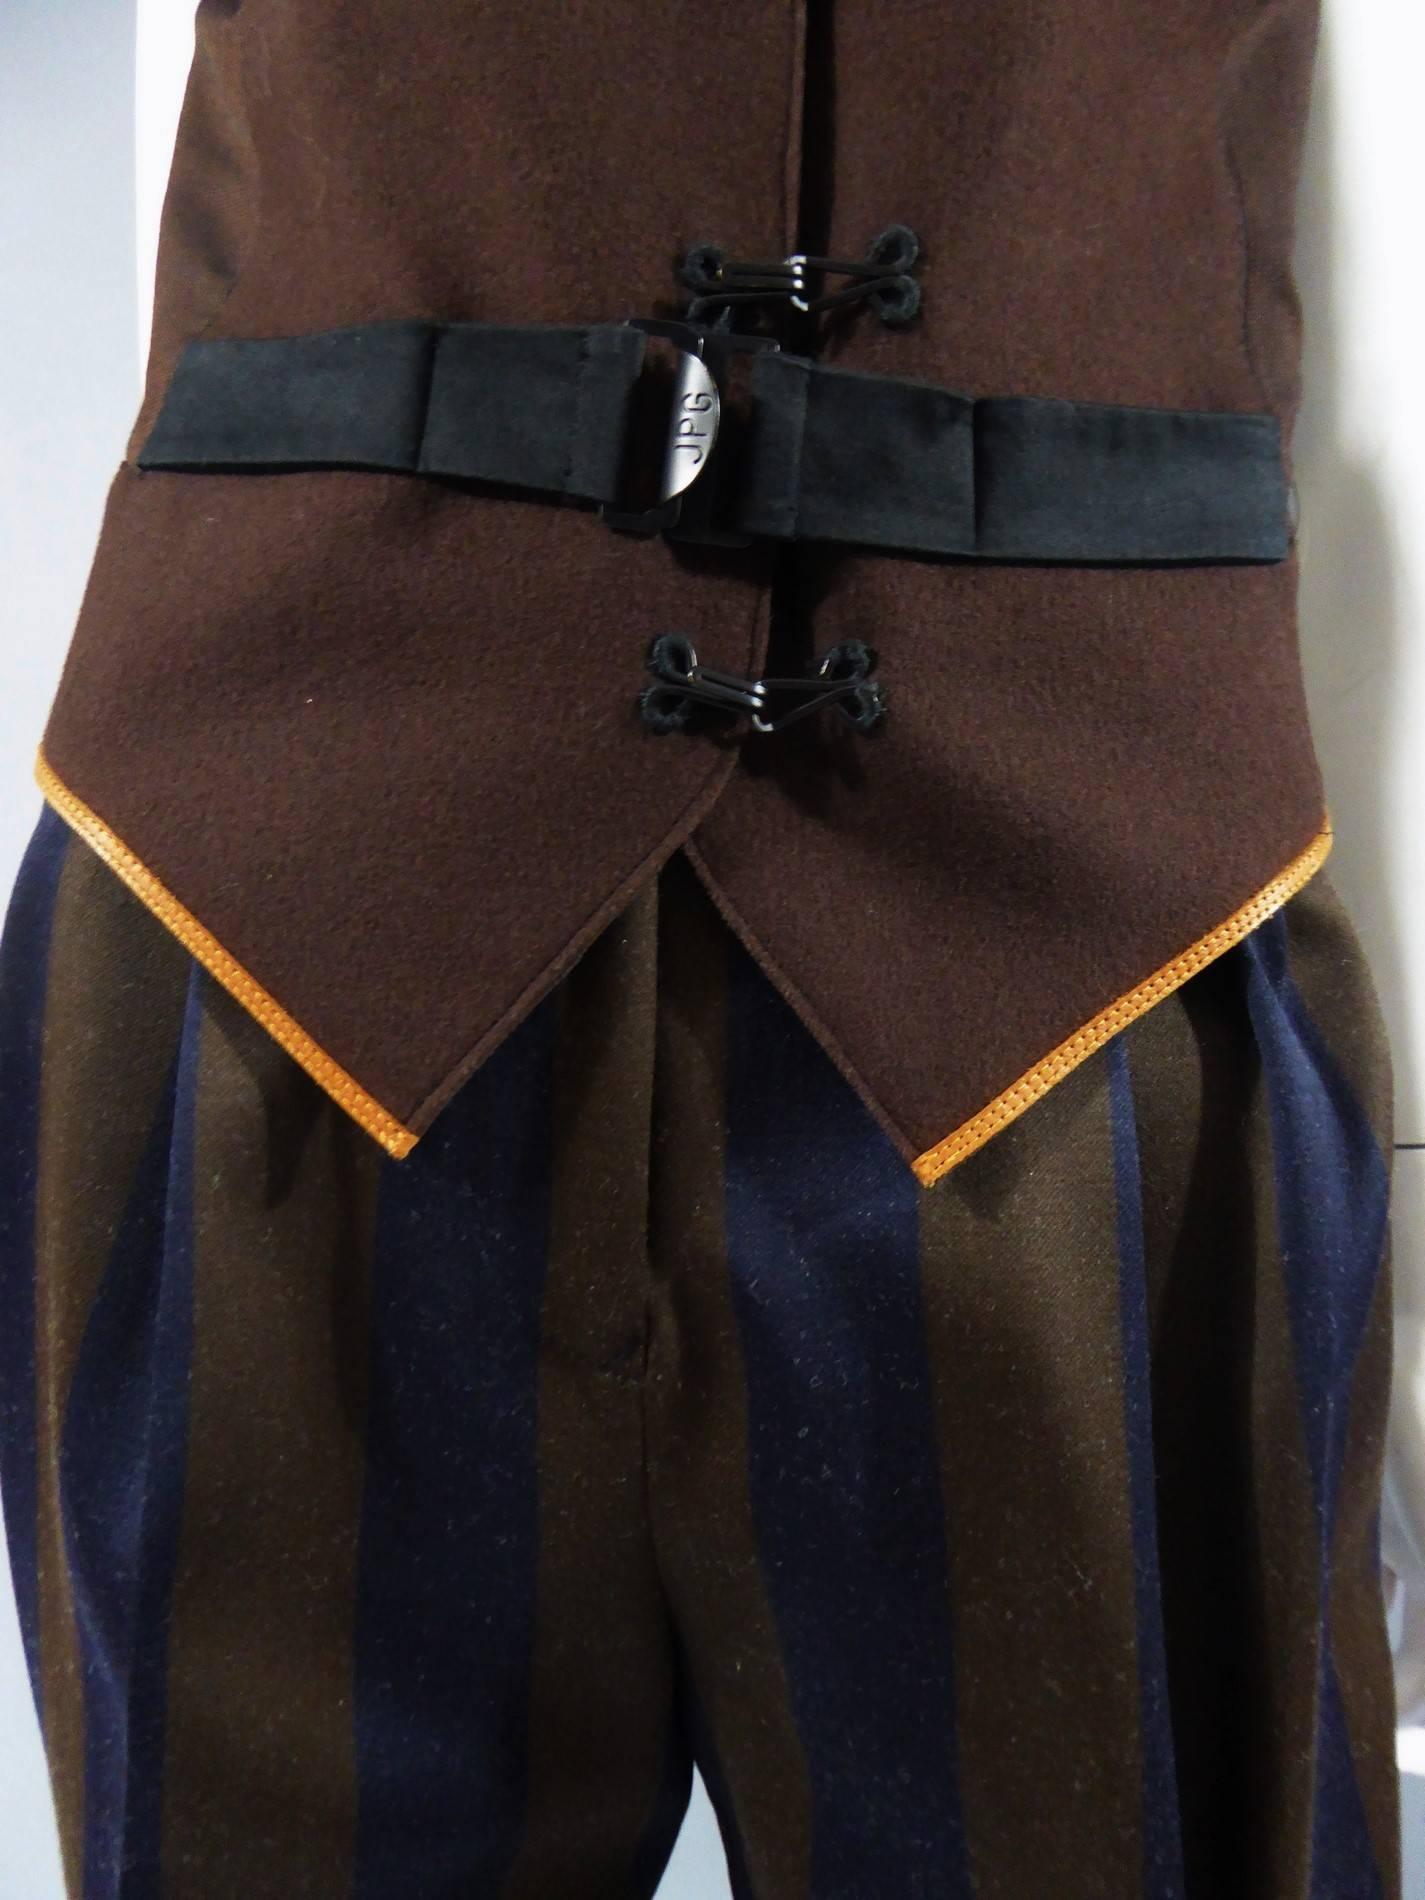 Etwa 1990/2000

Frankreich

Zweiteiliger Anzug aus Wolle Jean Paul Gaultier Woman. Ärmellose Weste mit ockergelbem Lederbesatz in der Taille. Schließt mit schwarzen Krallen auf der Vorderseite und einem halben Gürtel an der Taille, schwarz, dessen